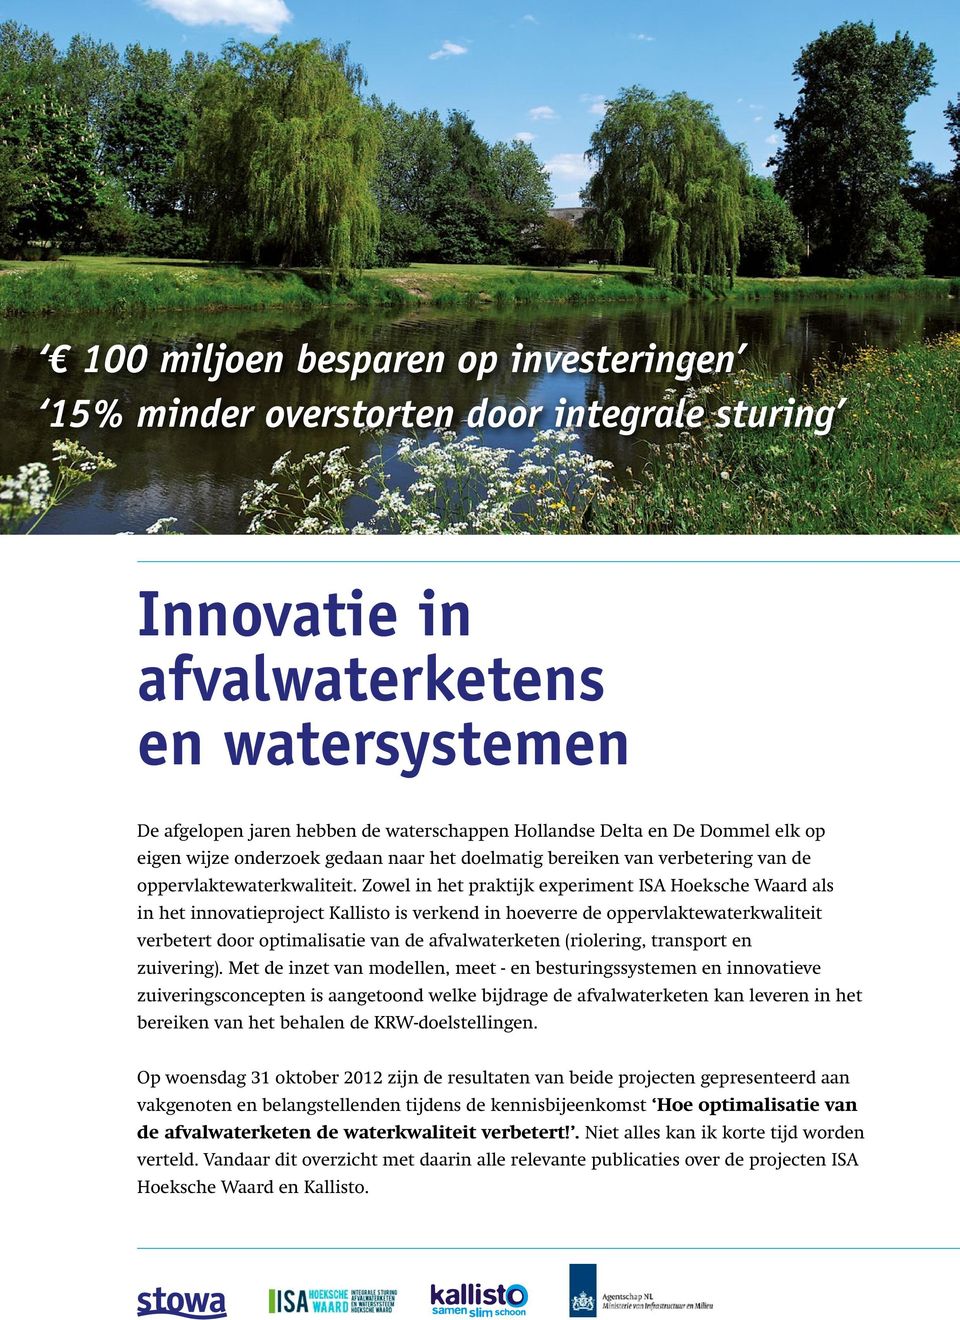 Zowel in het praktijk experiment ISA Hoeksche Waard als in het innovatieproject Kallisto is verkend in hoeverre de oppervlaktewaterkwaliteit verbetert door optimalisatie van de afvalwaterketen